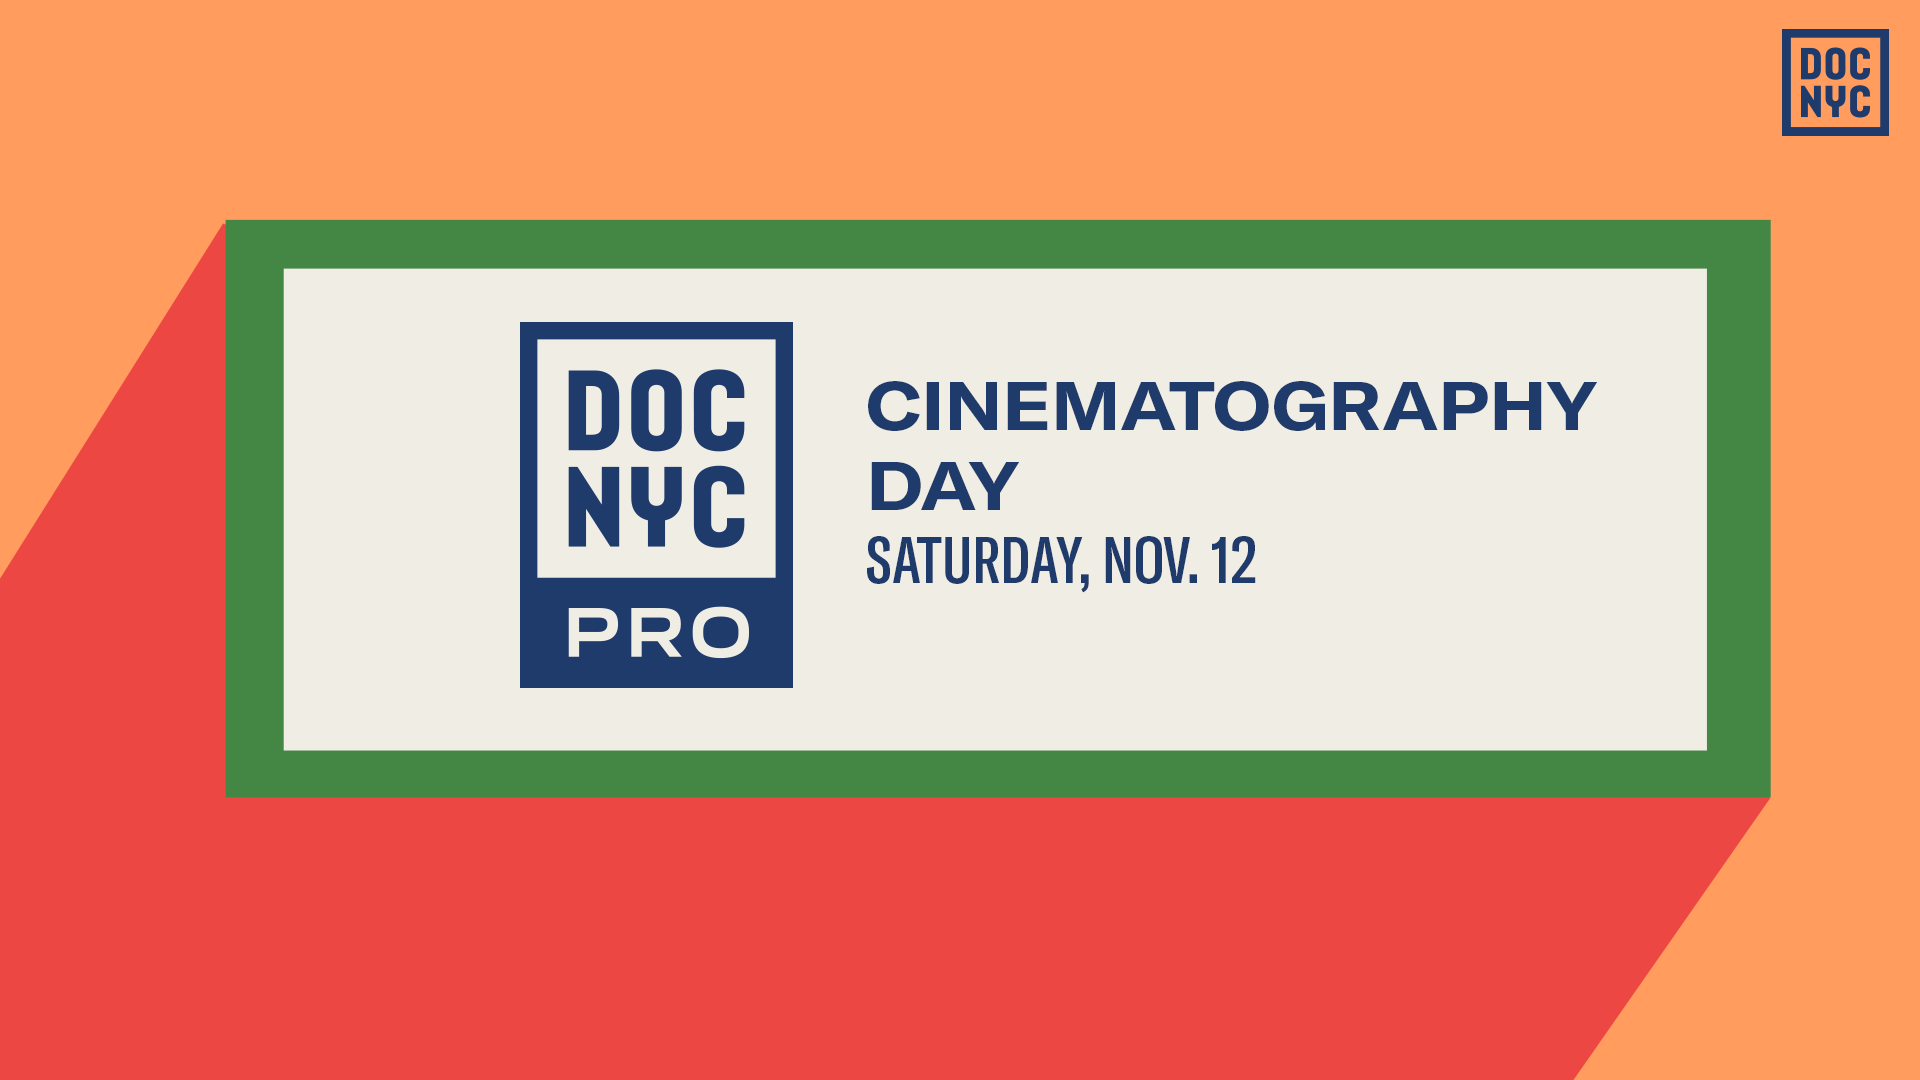 Cinematography Day (Nov. 12)